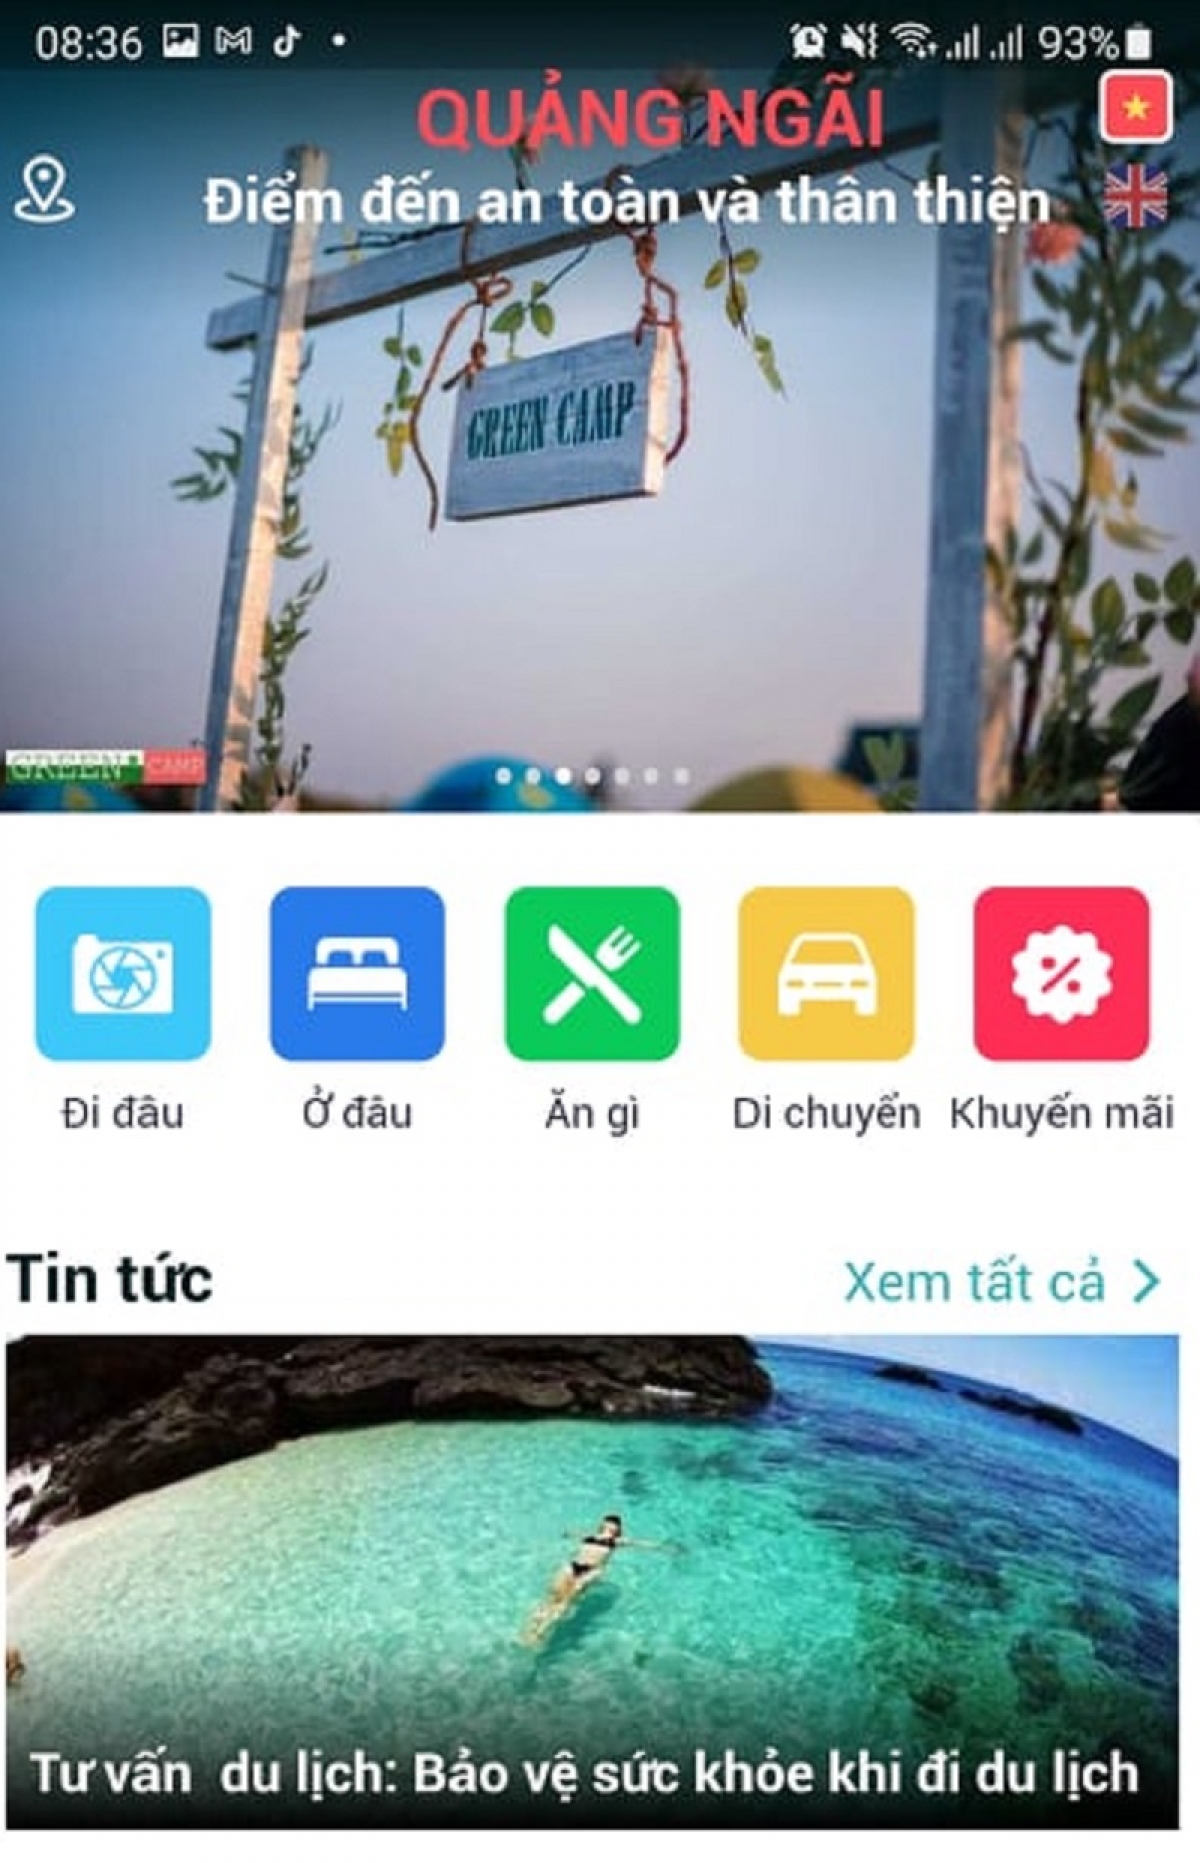  Giao diện App Du lịch Quảng Ngãi